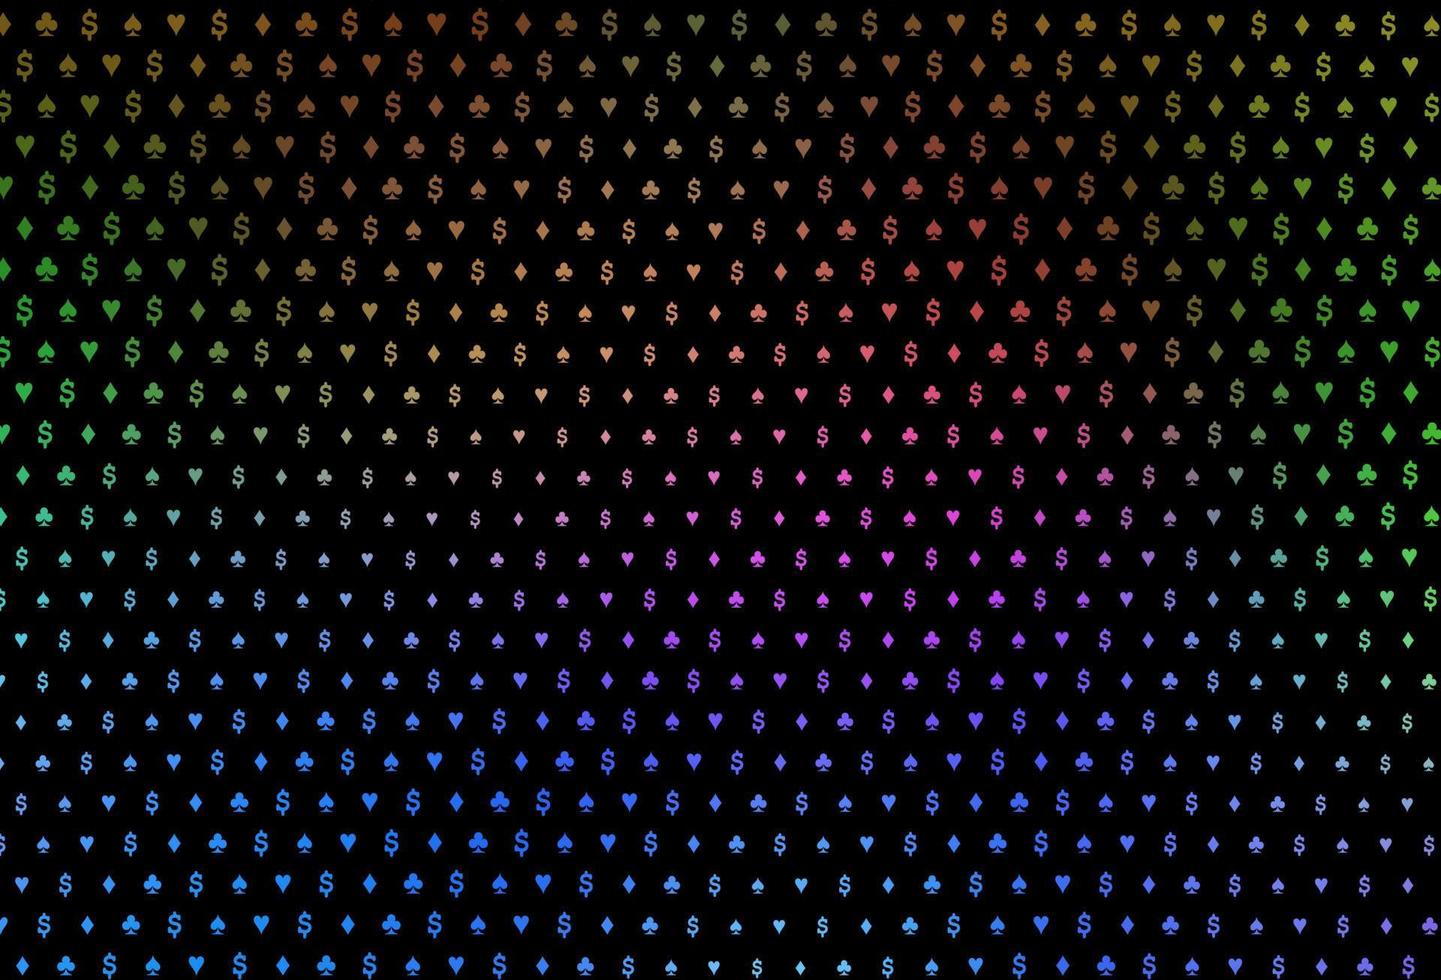 dunkler mehrfarbiger, Regenbogenvektorhintergrund mit Kartenzeichen. vektor